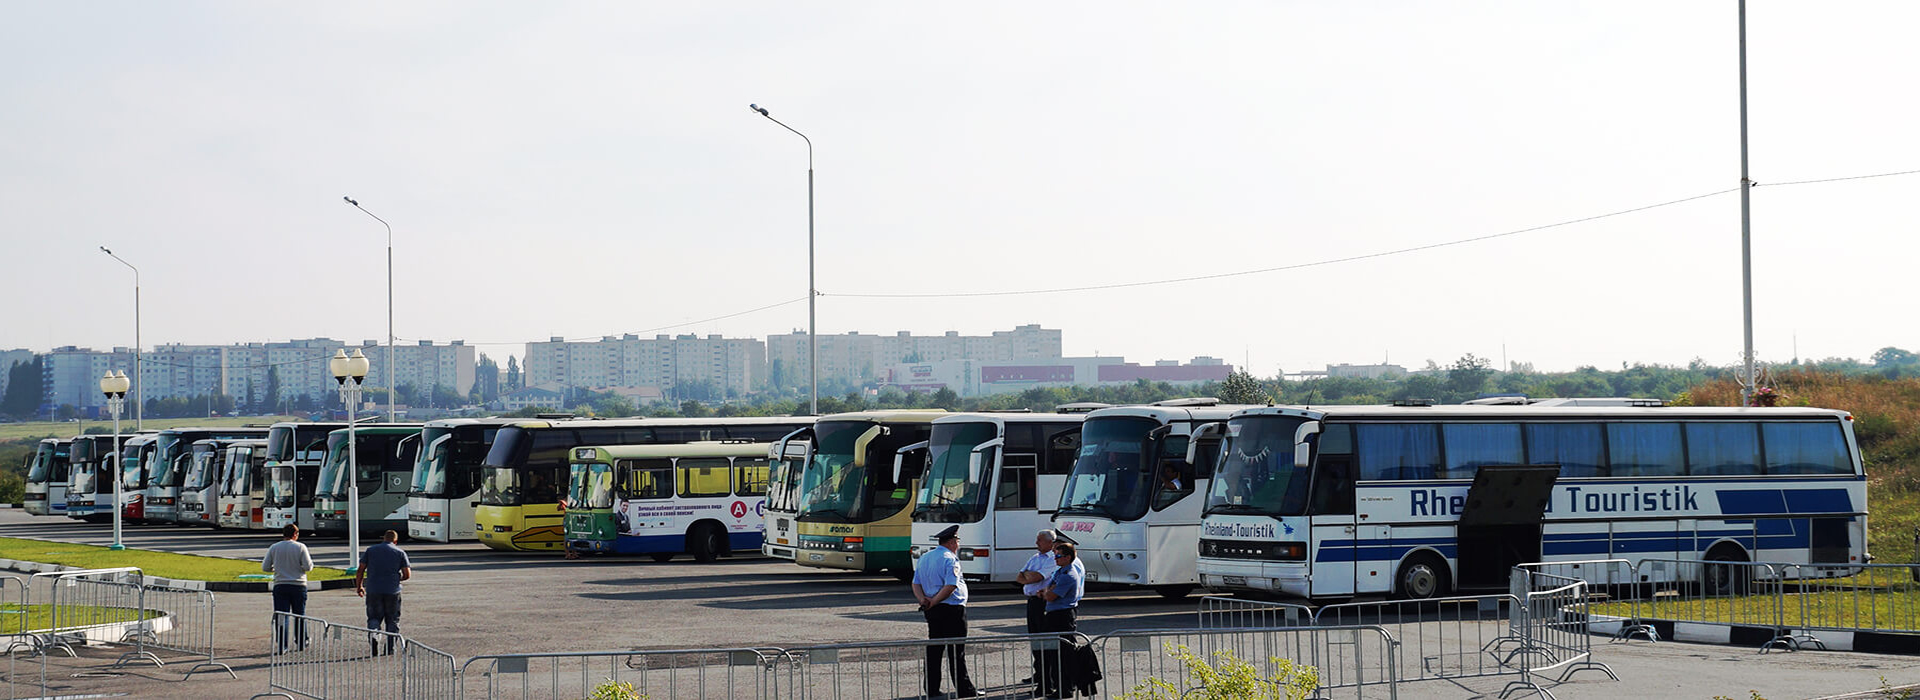 Заказ туристических автобусов, микроавтобусов и минивенов